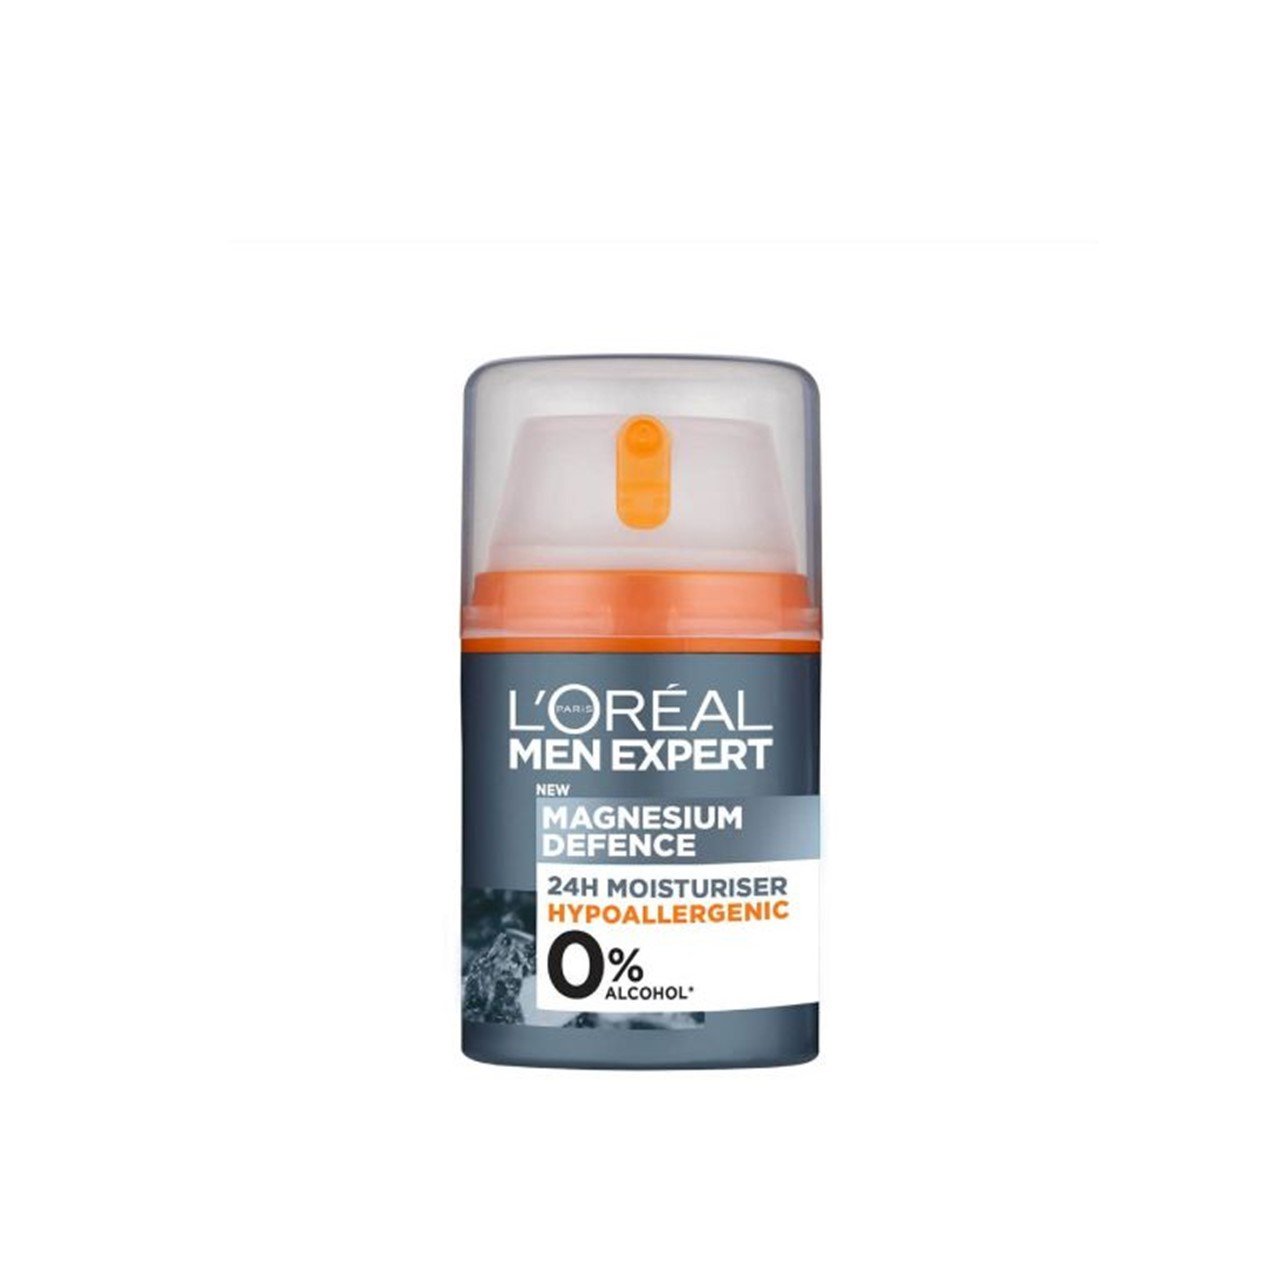 L'Oréal Paris Men Expert Magnesium Defense 24h Moisturizer 50ml